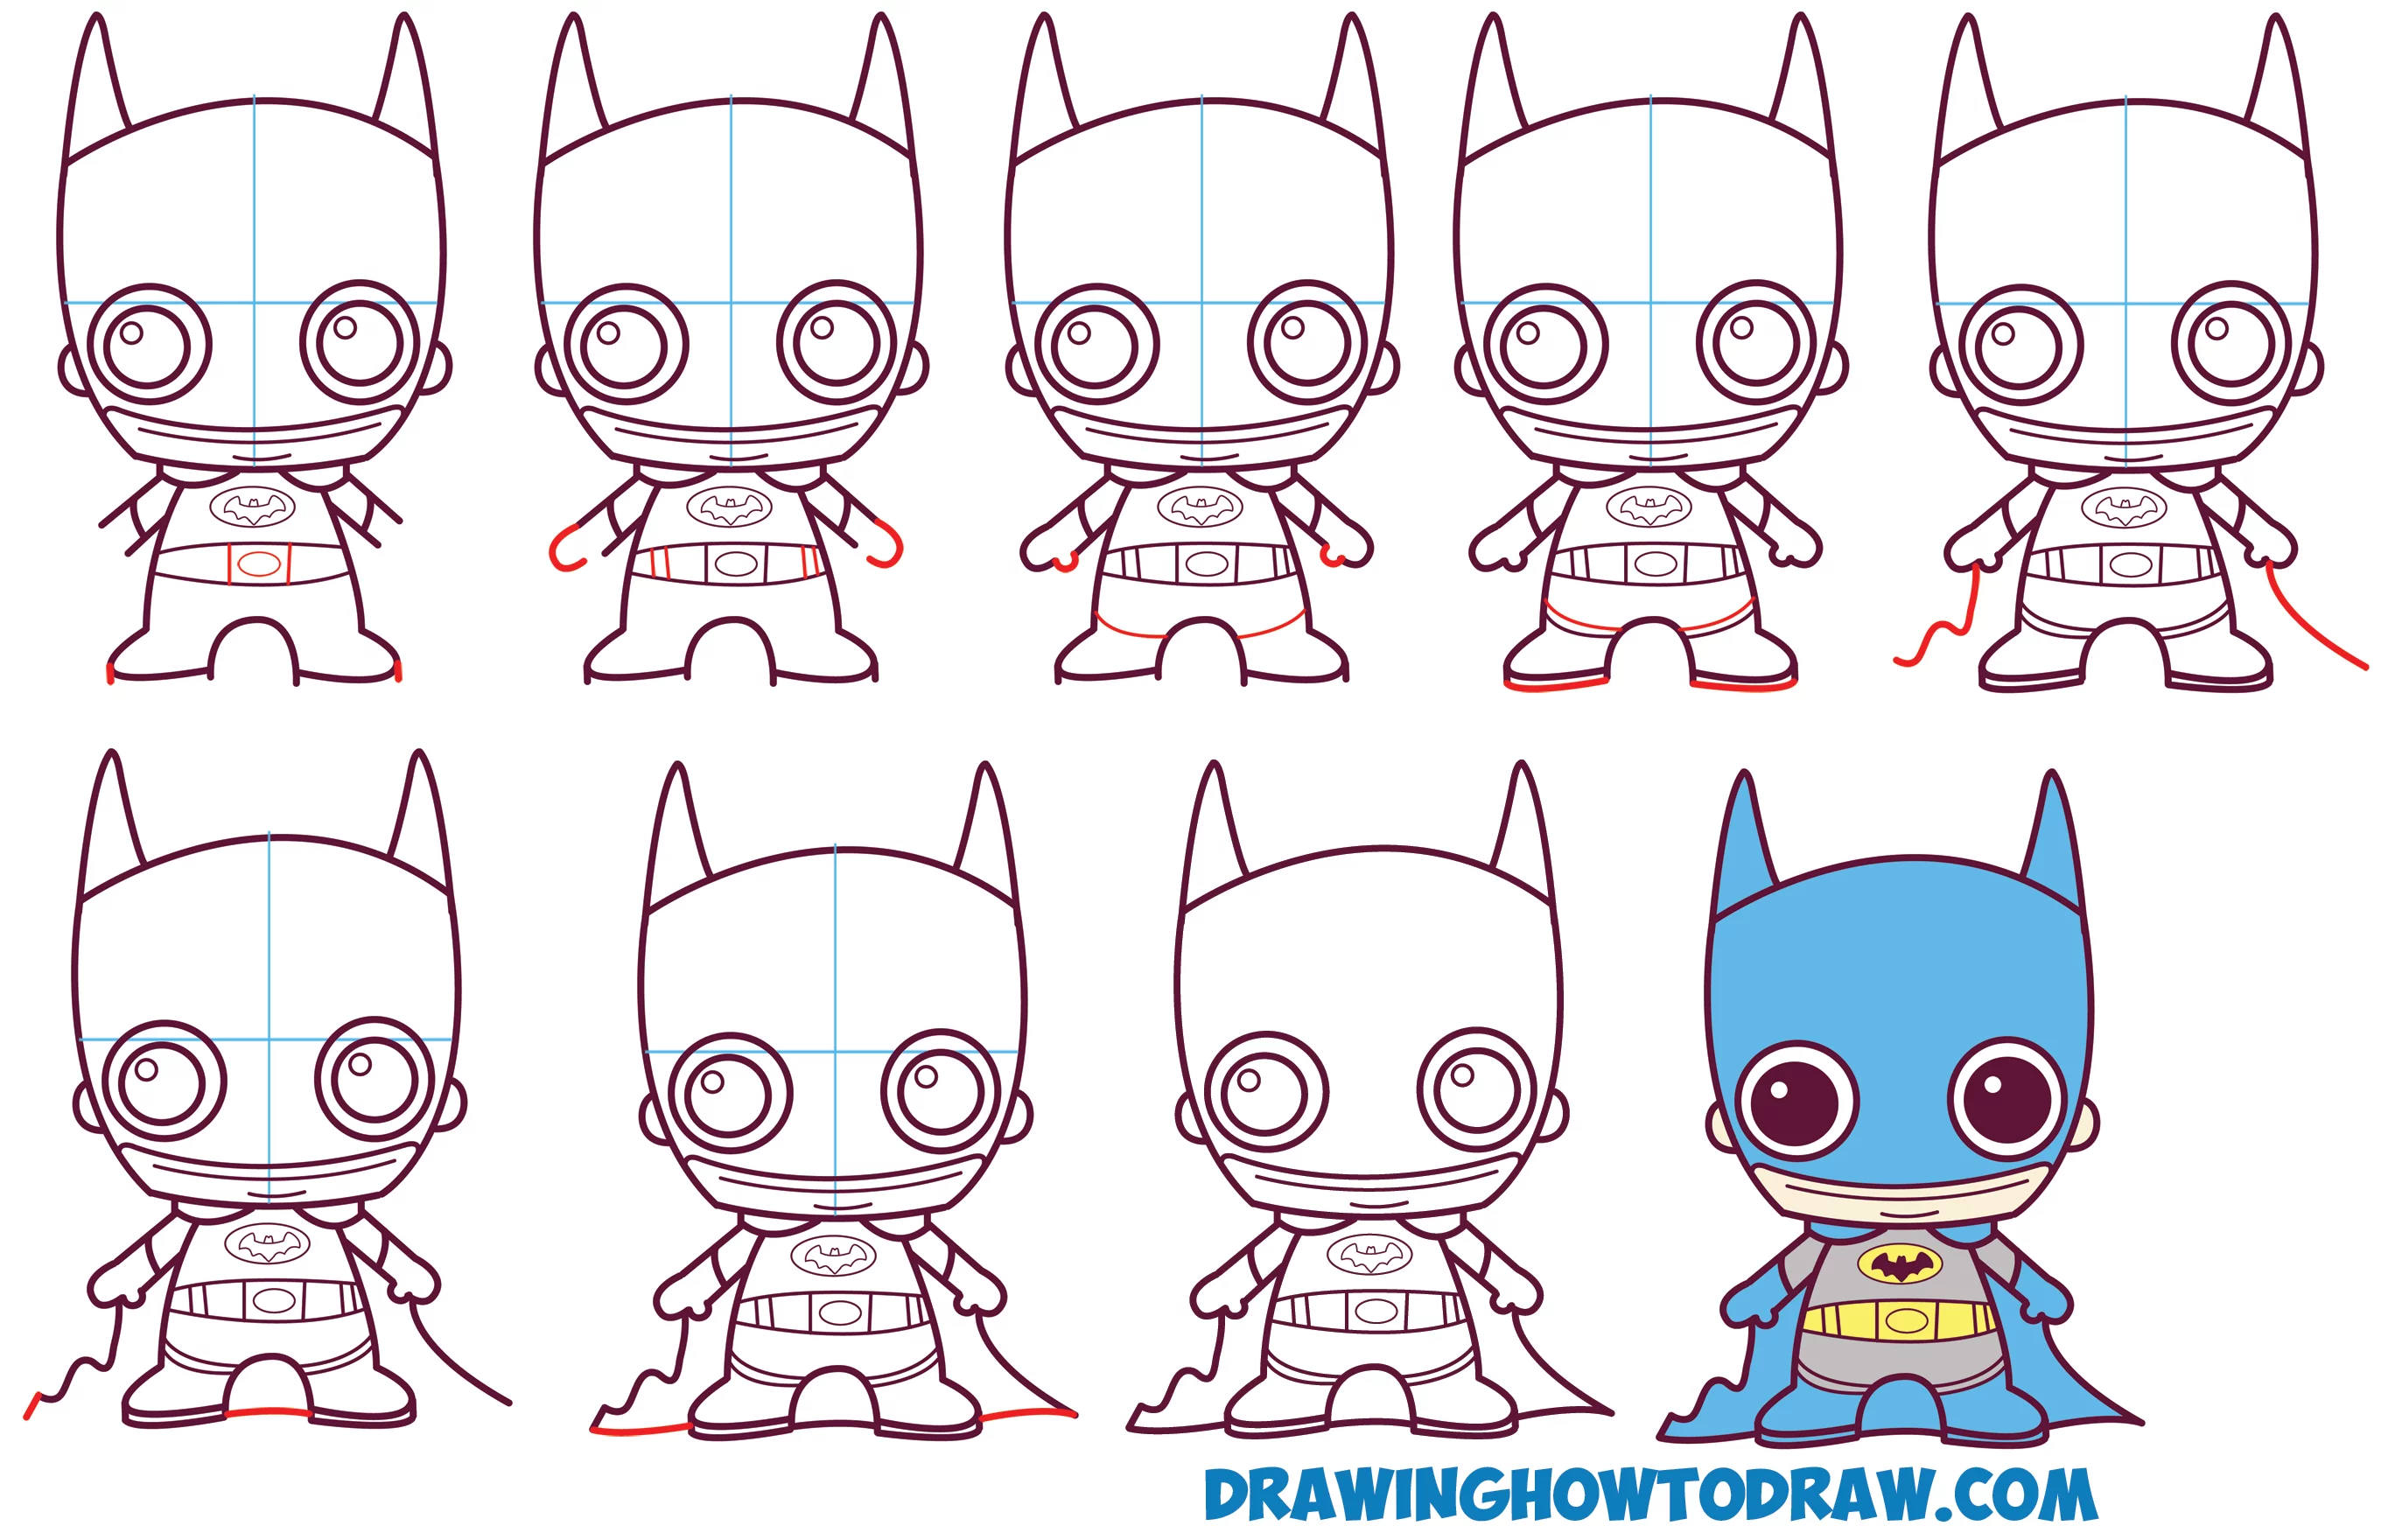 Opi piirtää söpö / vauva / Kawaii / Chibi Batman DC Comics yksinkertaisia ohjeita piirustus oppitunti lapsille